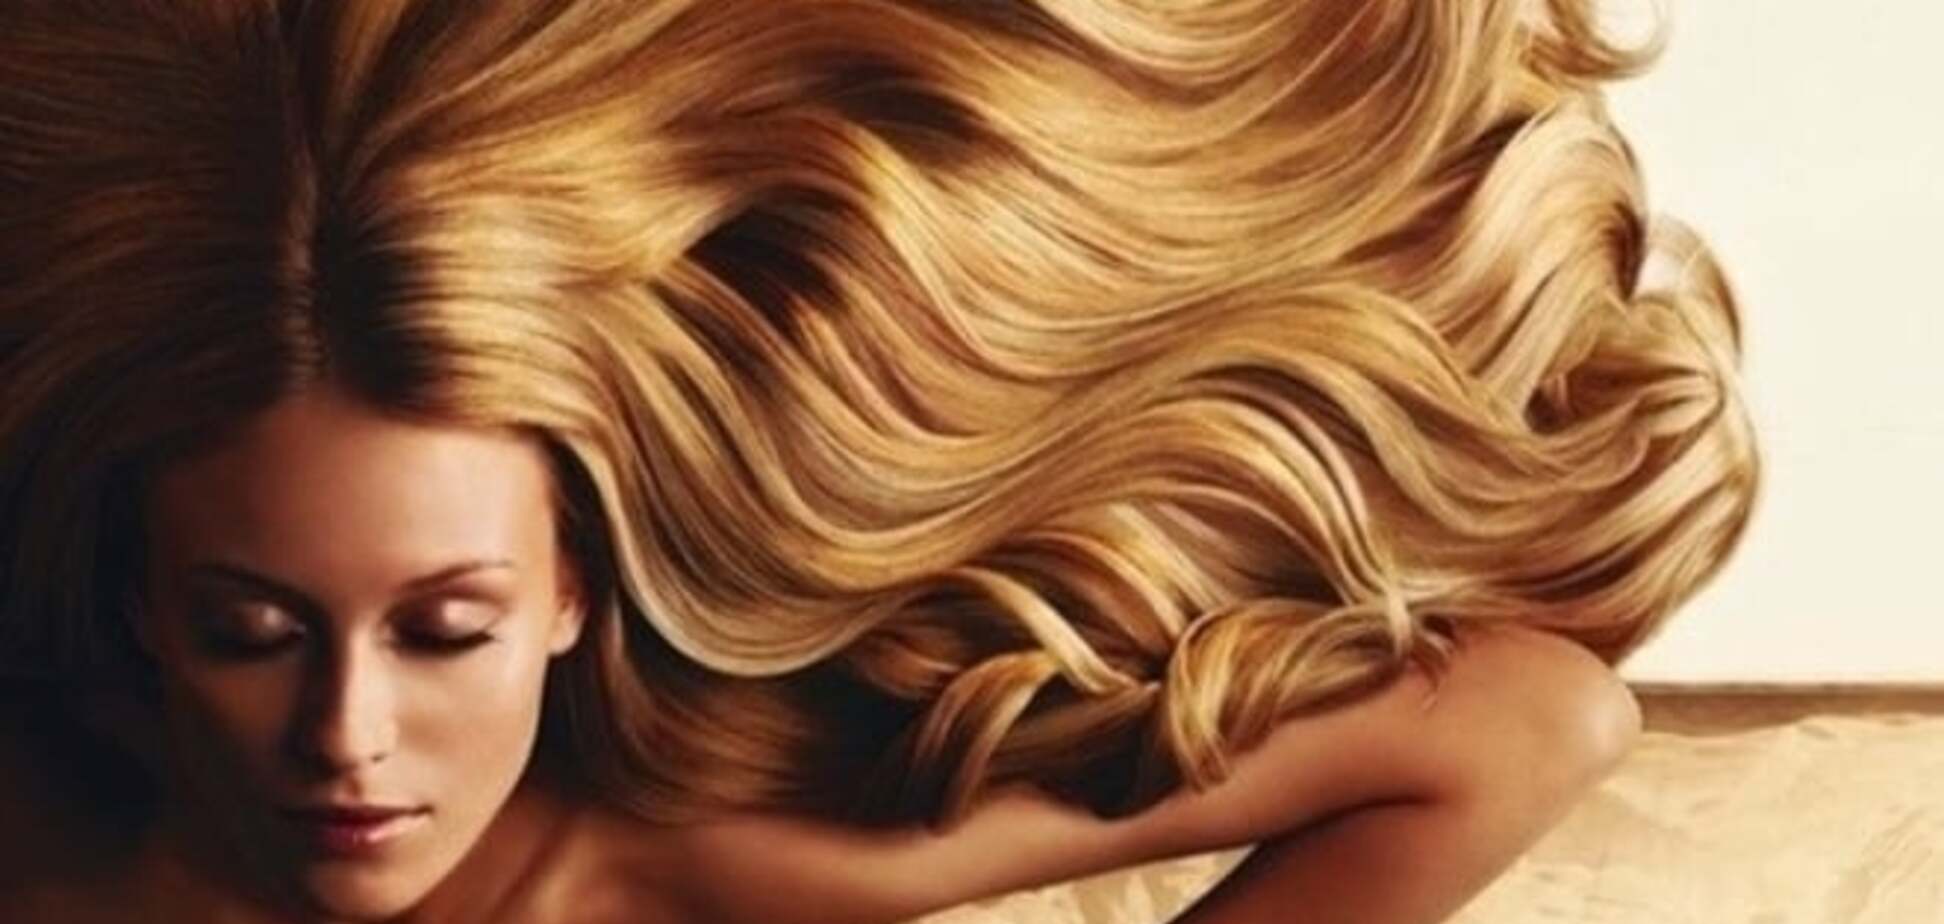 Аюрведа: 4 основных правила для красоты и здоровья волос